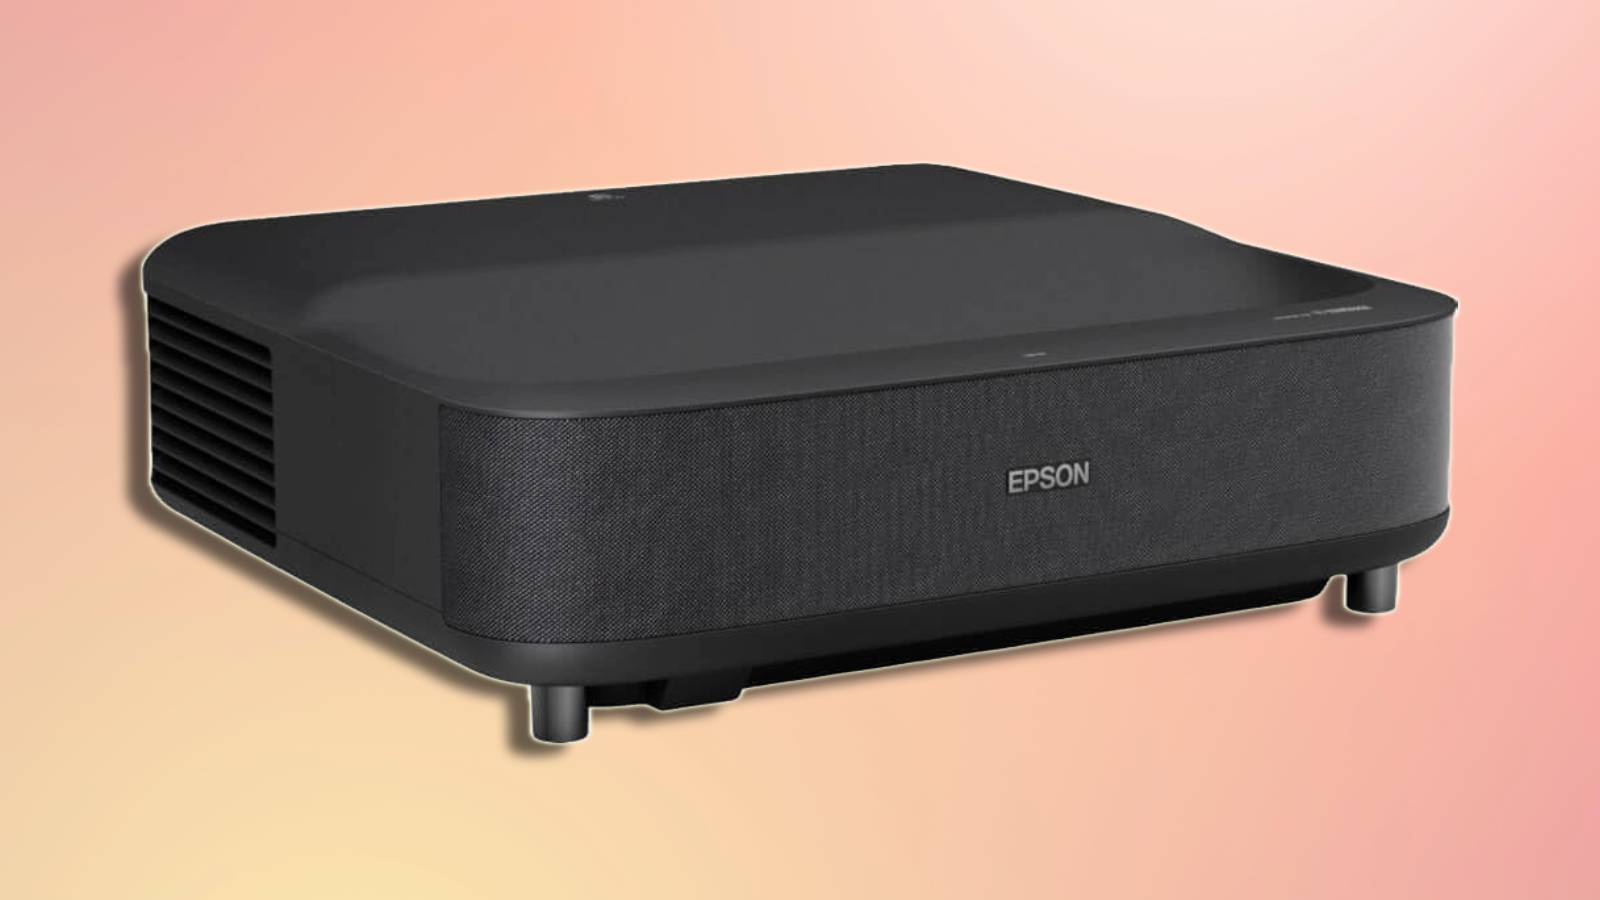 Epson LS500-120, Projecteur TV Laser - 3LCD